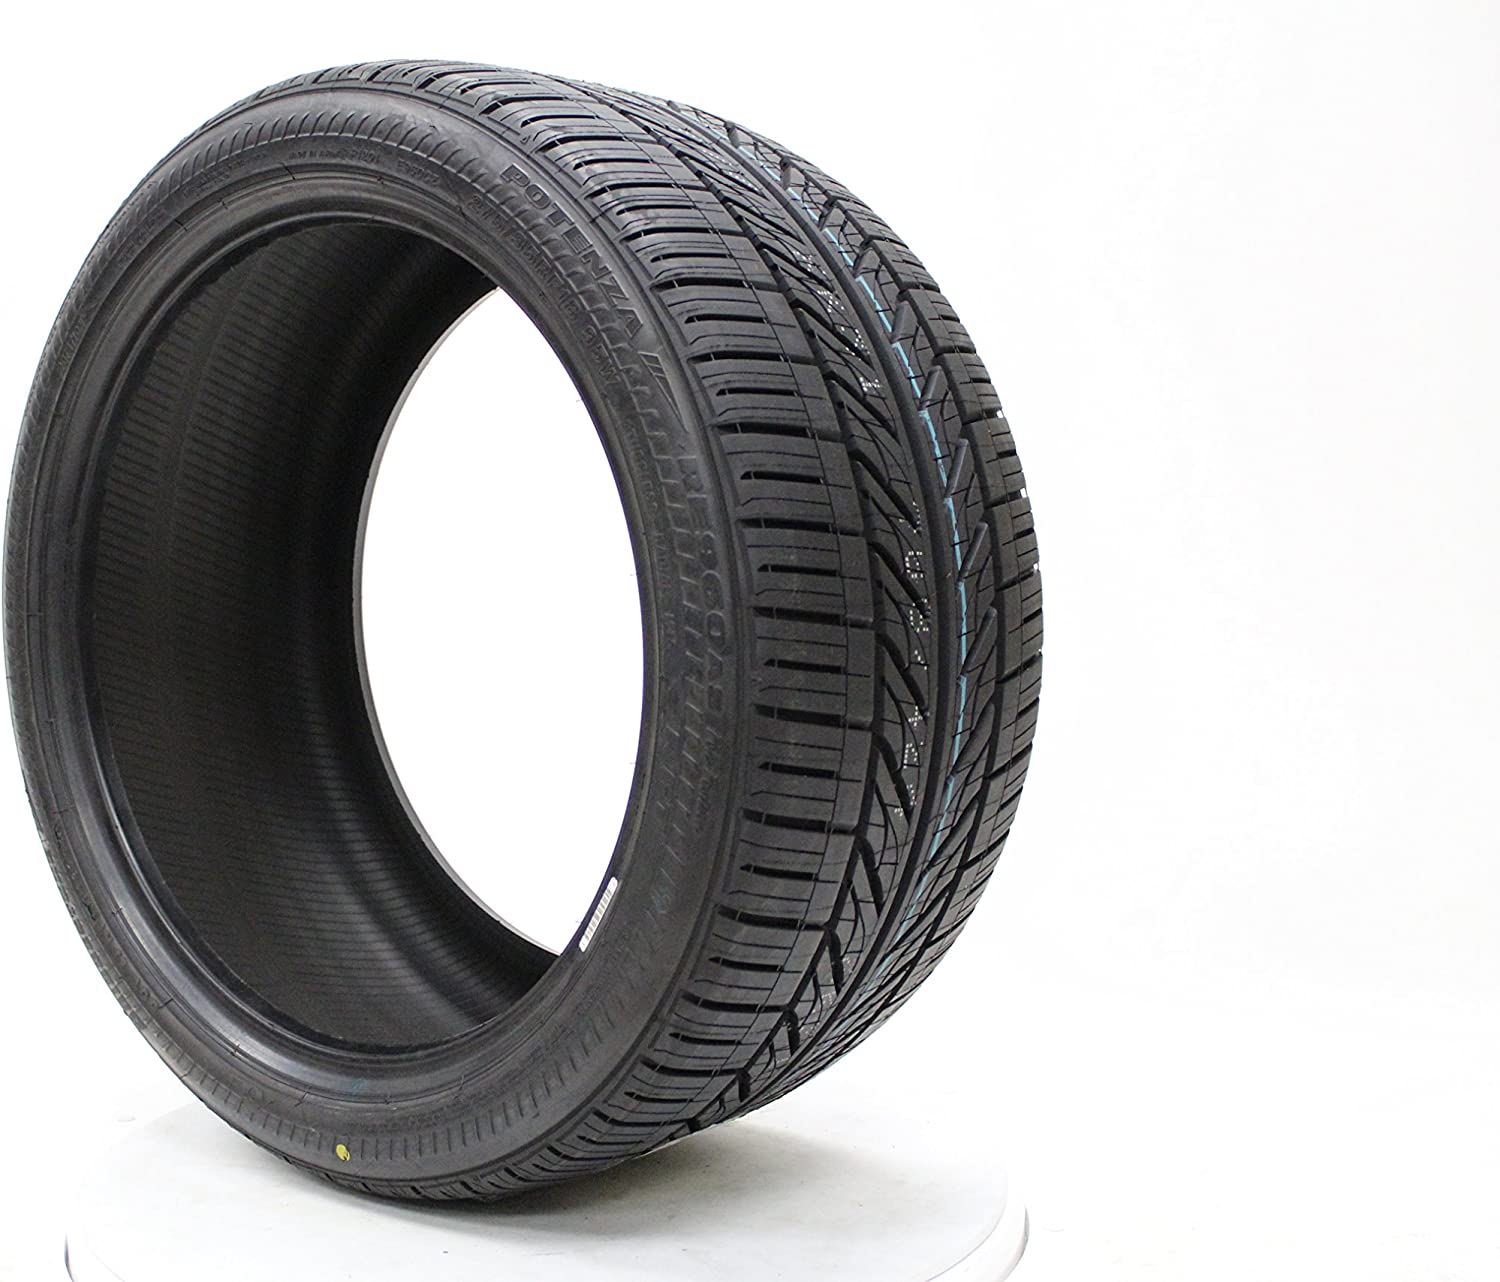 Tire rack: тесты всесезонных шин класса uhp в зимних условиях